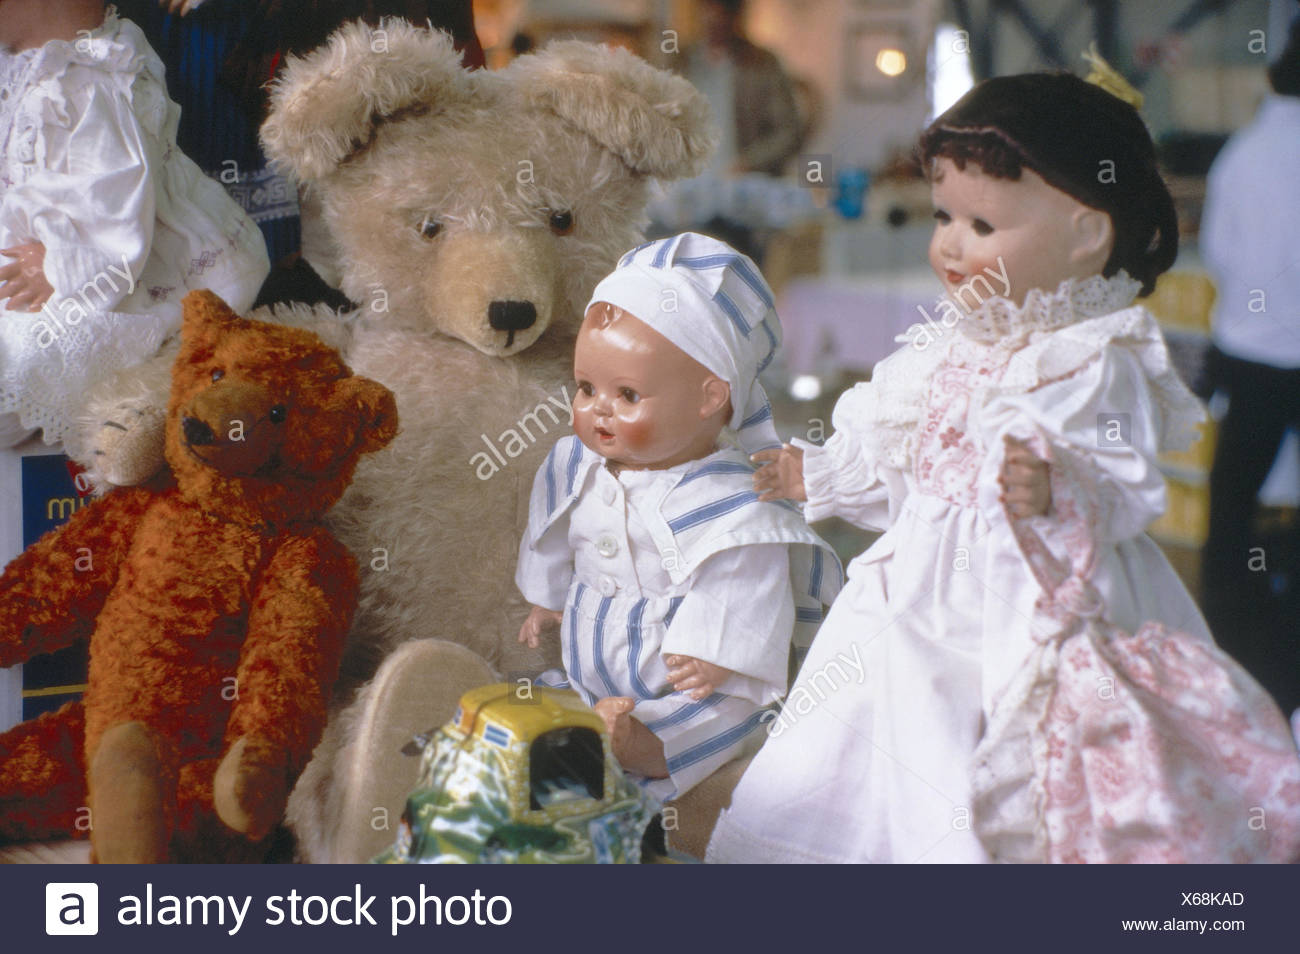 dolls and teddy bears